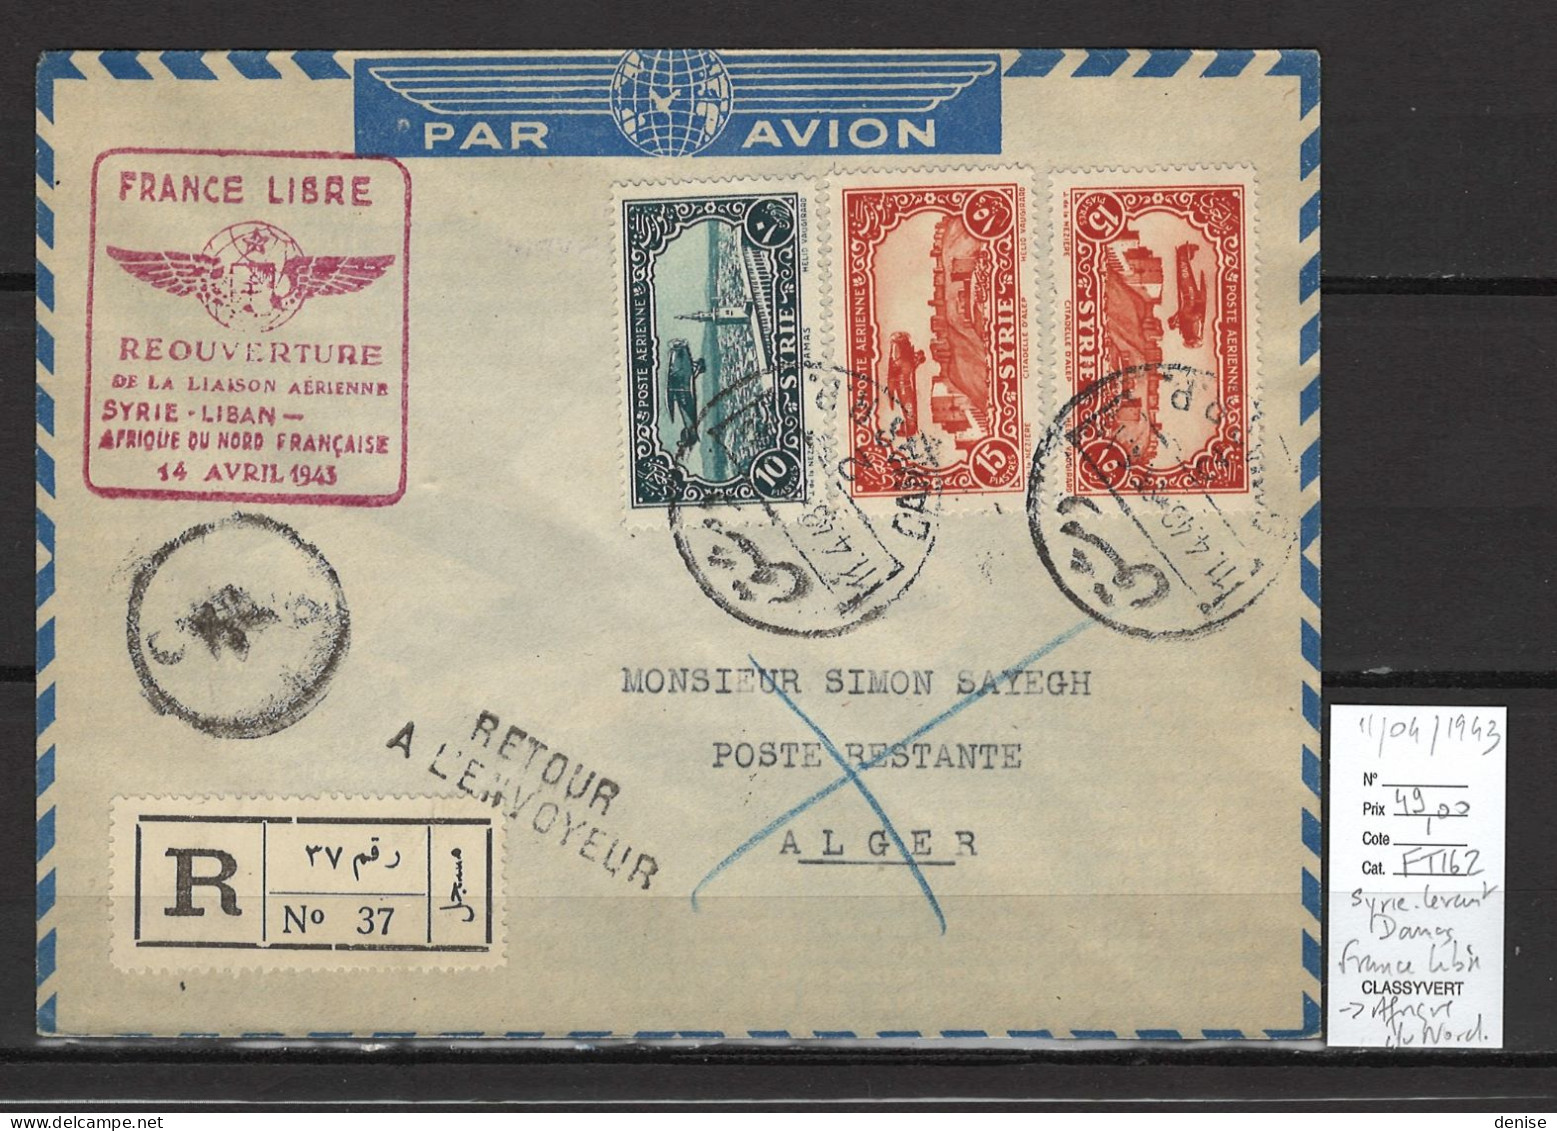 Syrie - France Libre - 1er Vol Afrique Du Nord Alger - 11/04/1943 - Aéreo